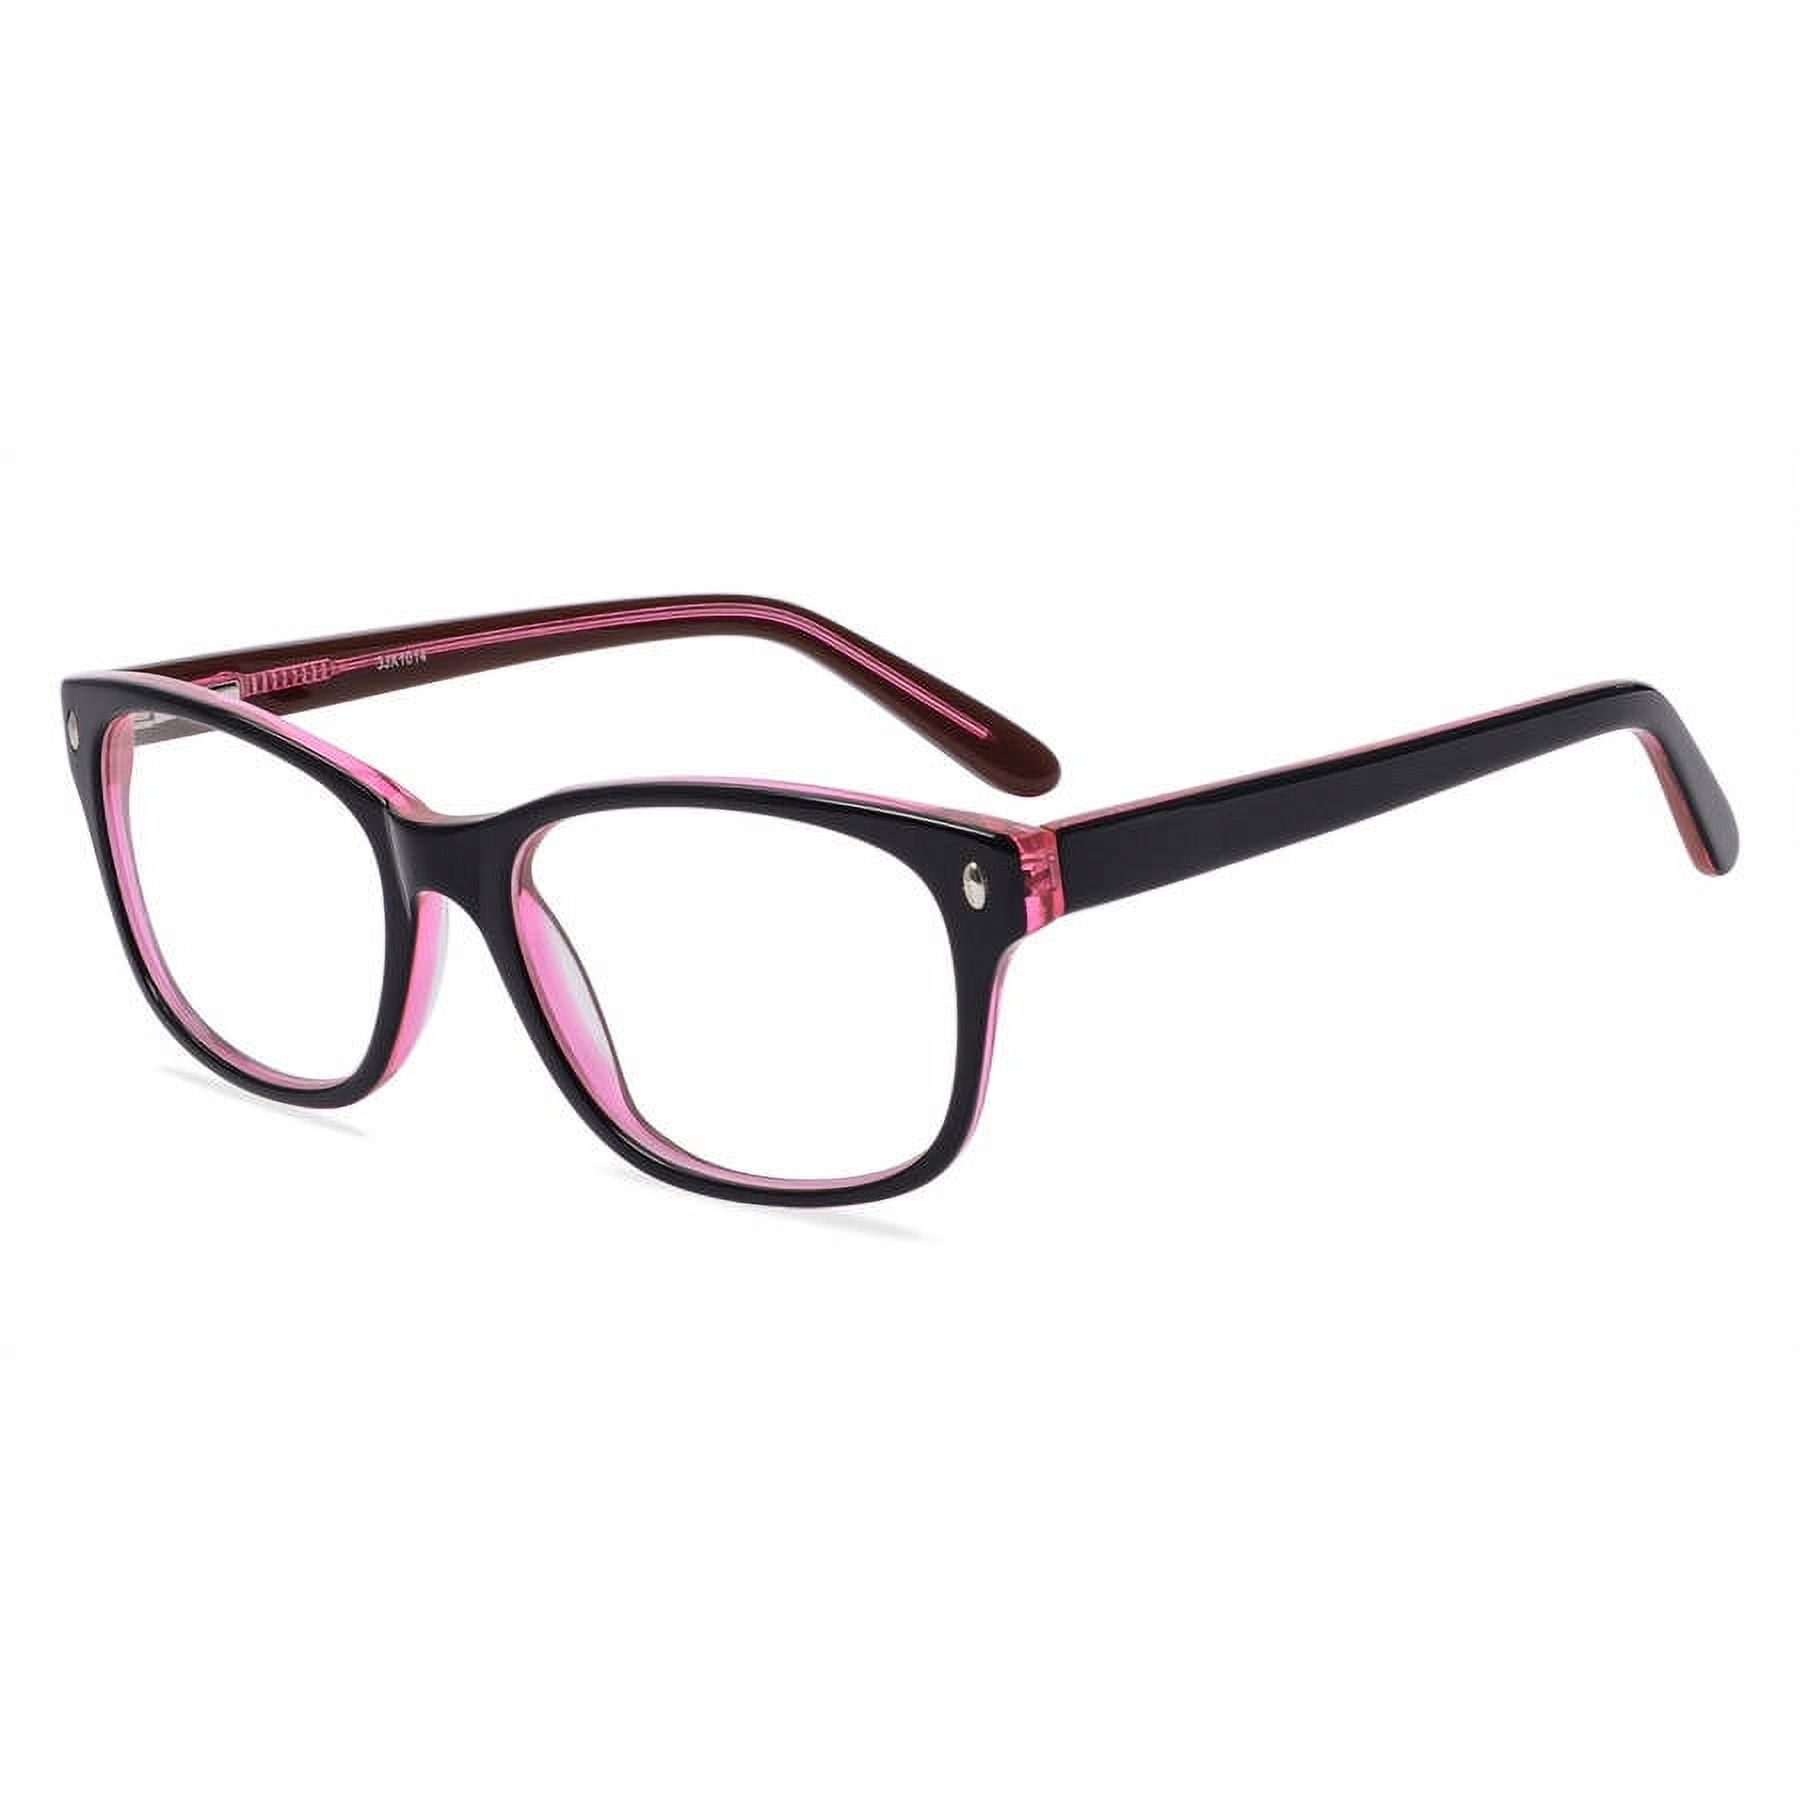 Contour Women's Rx'able Eyeglasses, FM13041 Black/Red - image 1 of 9